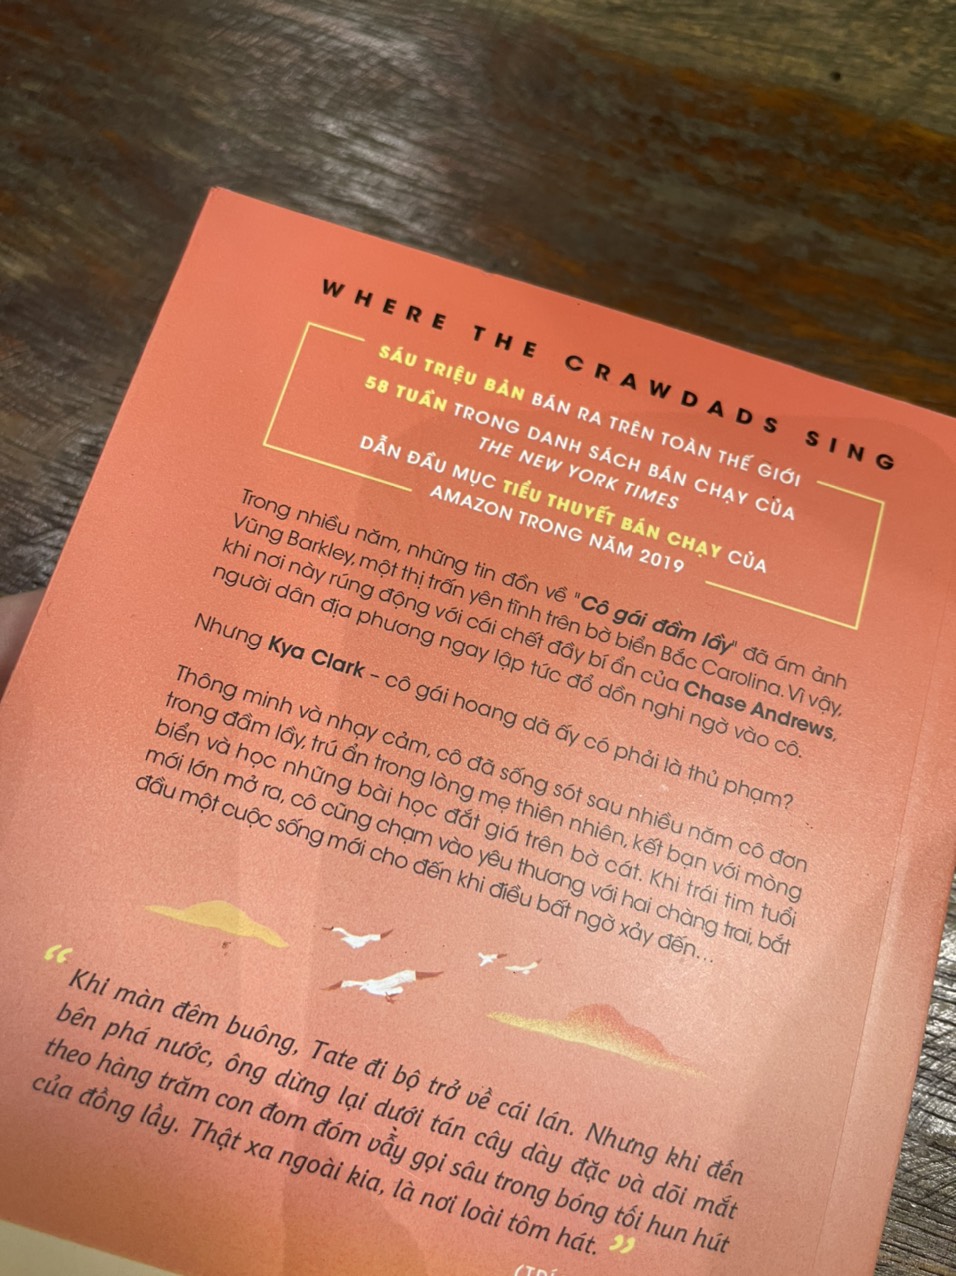 (#1 New Yorrk Time Bestseller) XA NGOÀI KIA NƠI LOÀI TÔM HÁT - Delia Owens - Trương Hoàng Uyên Phương dịch – Nxb Trẻ - bìa mềm